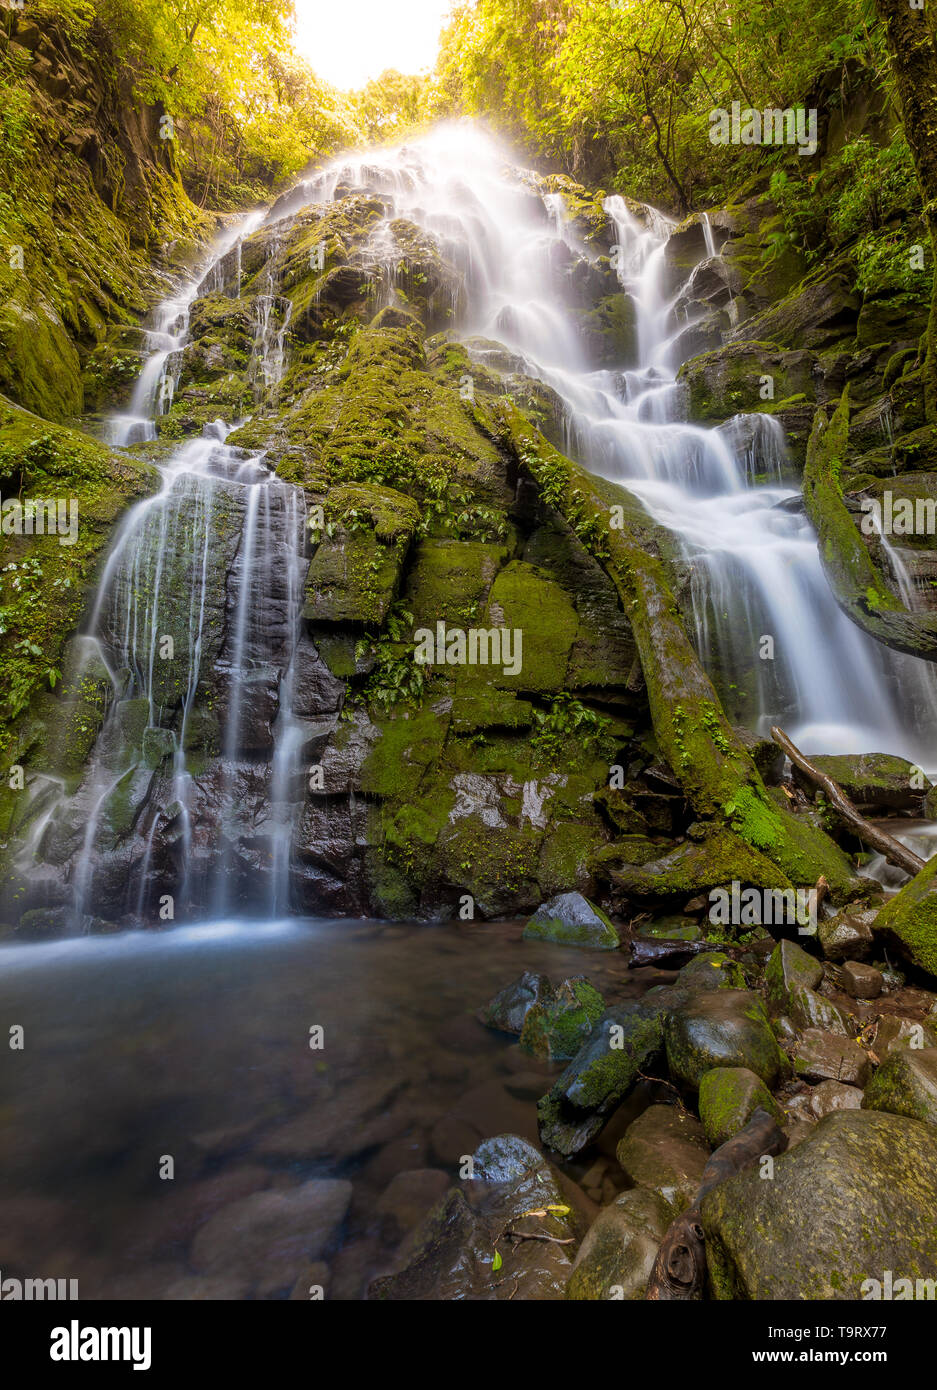 Scenic view of a waterfall in Rincon de la Vieja National Park, Costa Rica Stock Photo